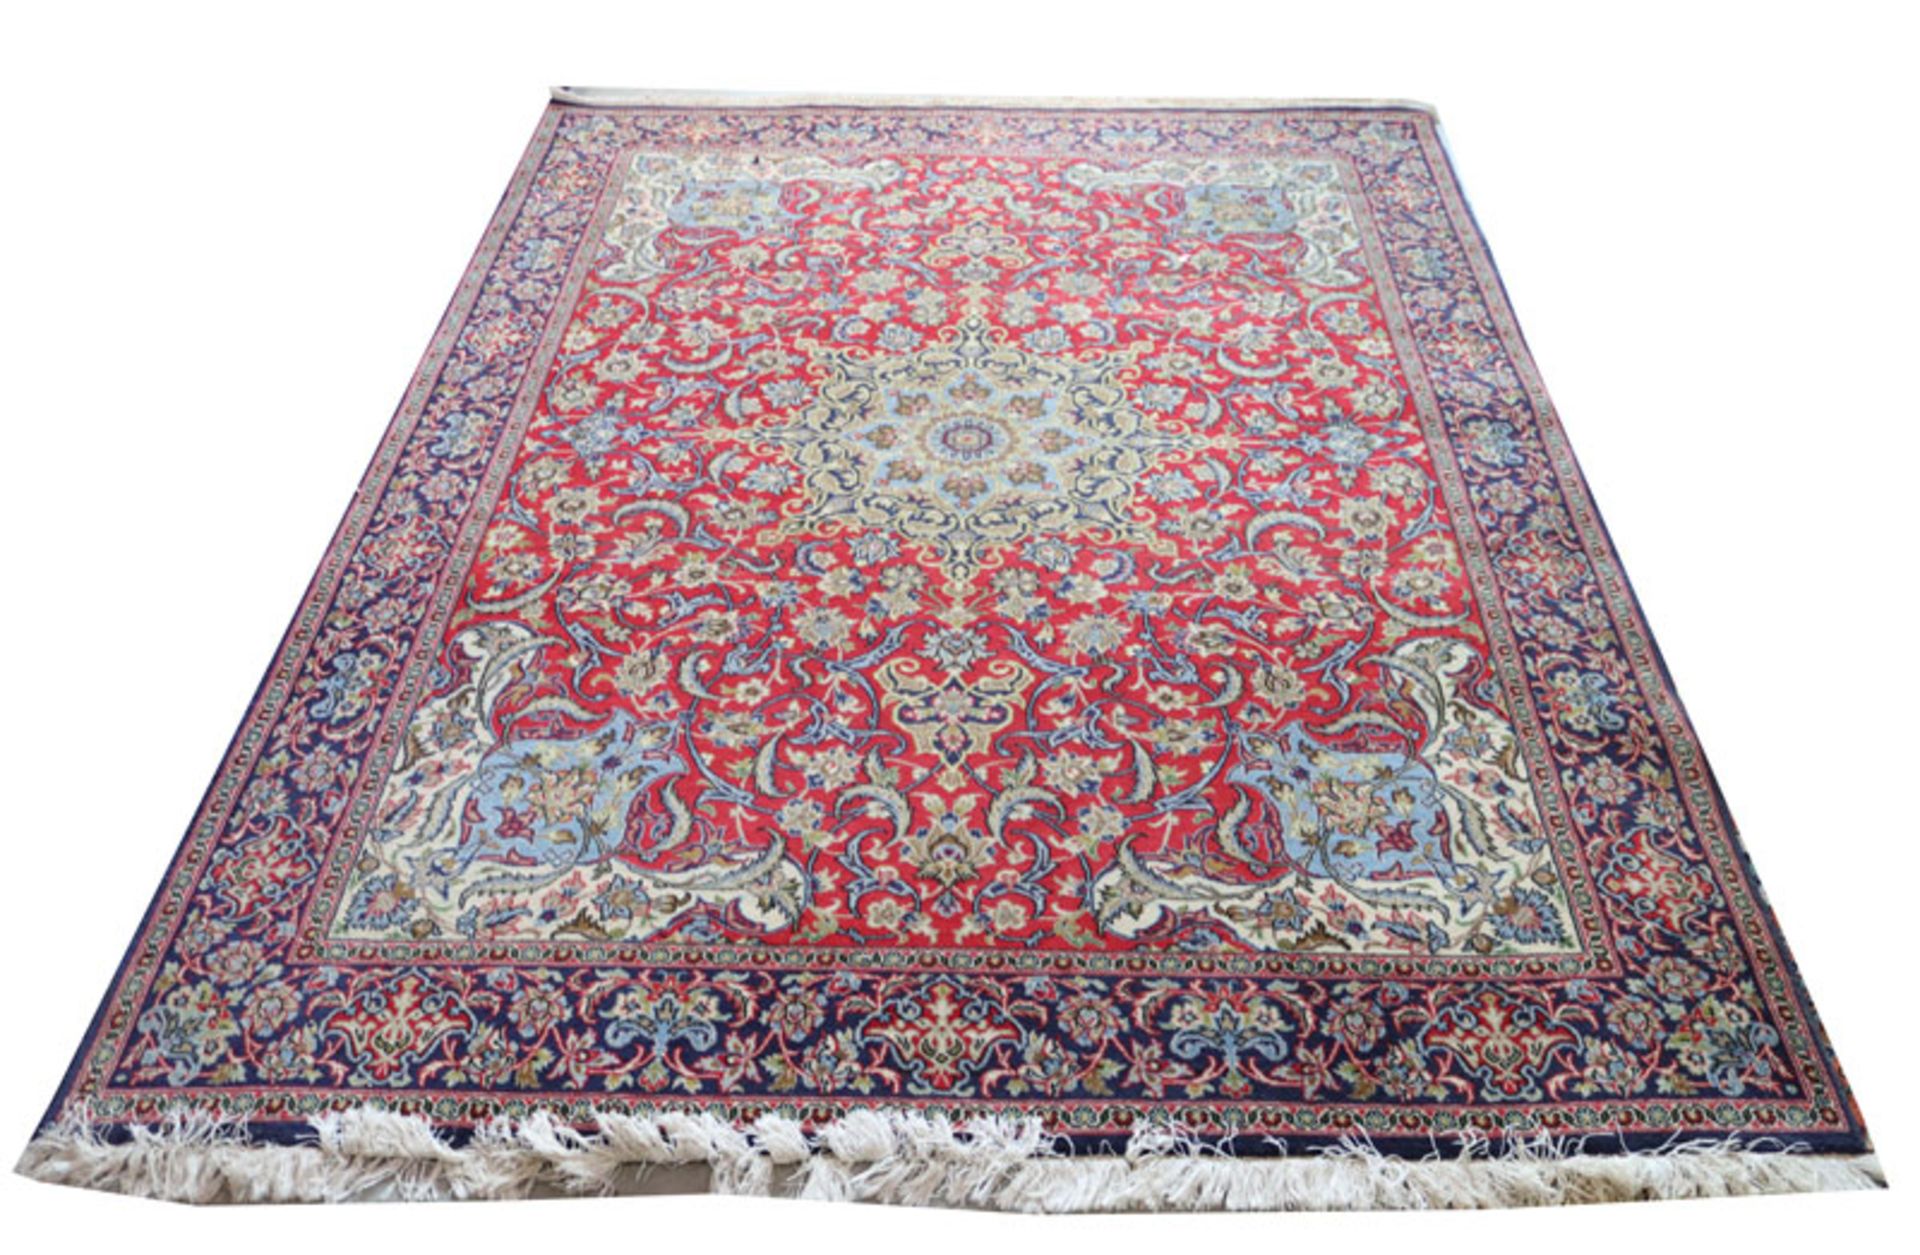 Persischer Teppich, rot/blau/bunt, Gebrauchsspuren 261 cm x 188 cm